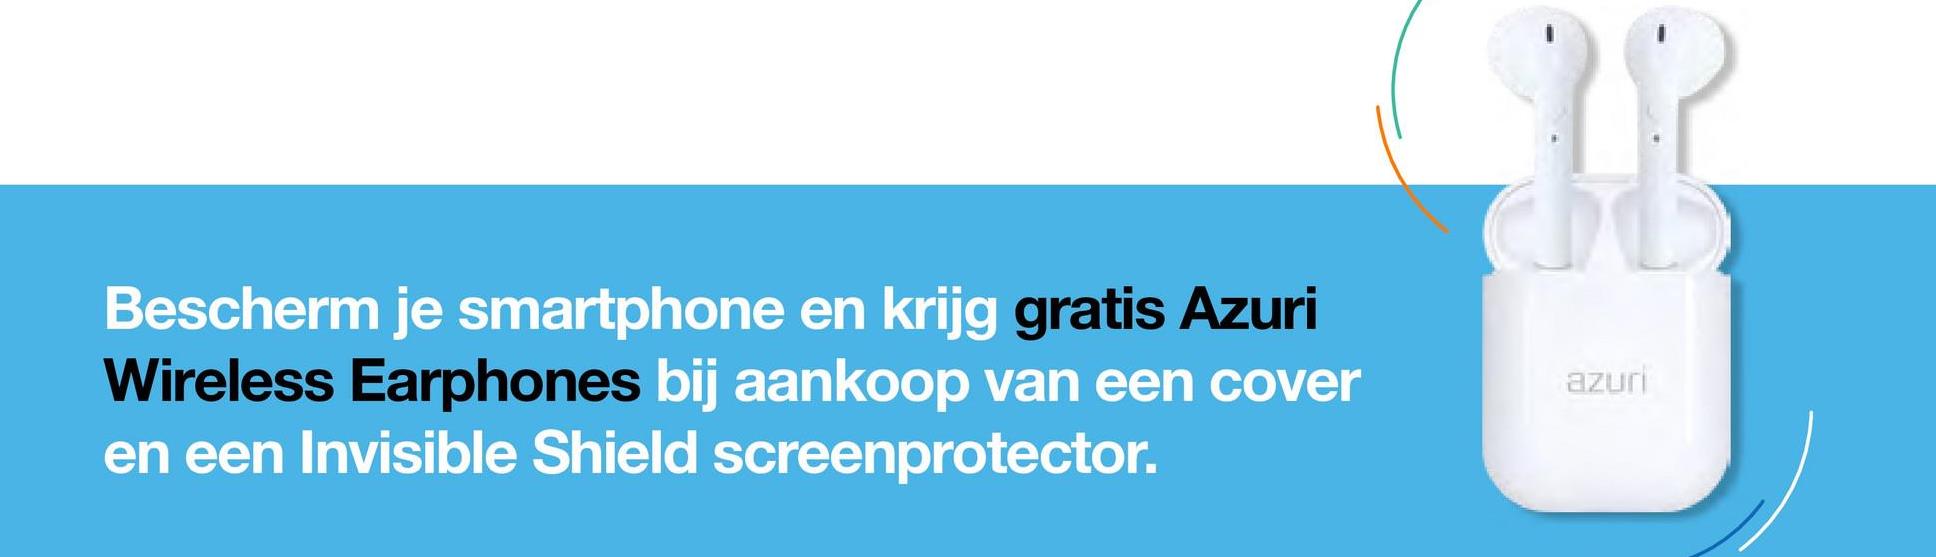 Bescherm je smartphone en krijg gratis Azuri
Wireless Earphones bij aankoop van een cover
en een Invisible Shield screenprotector.
}{
azuri